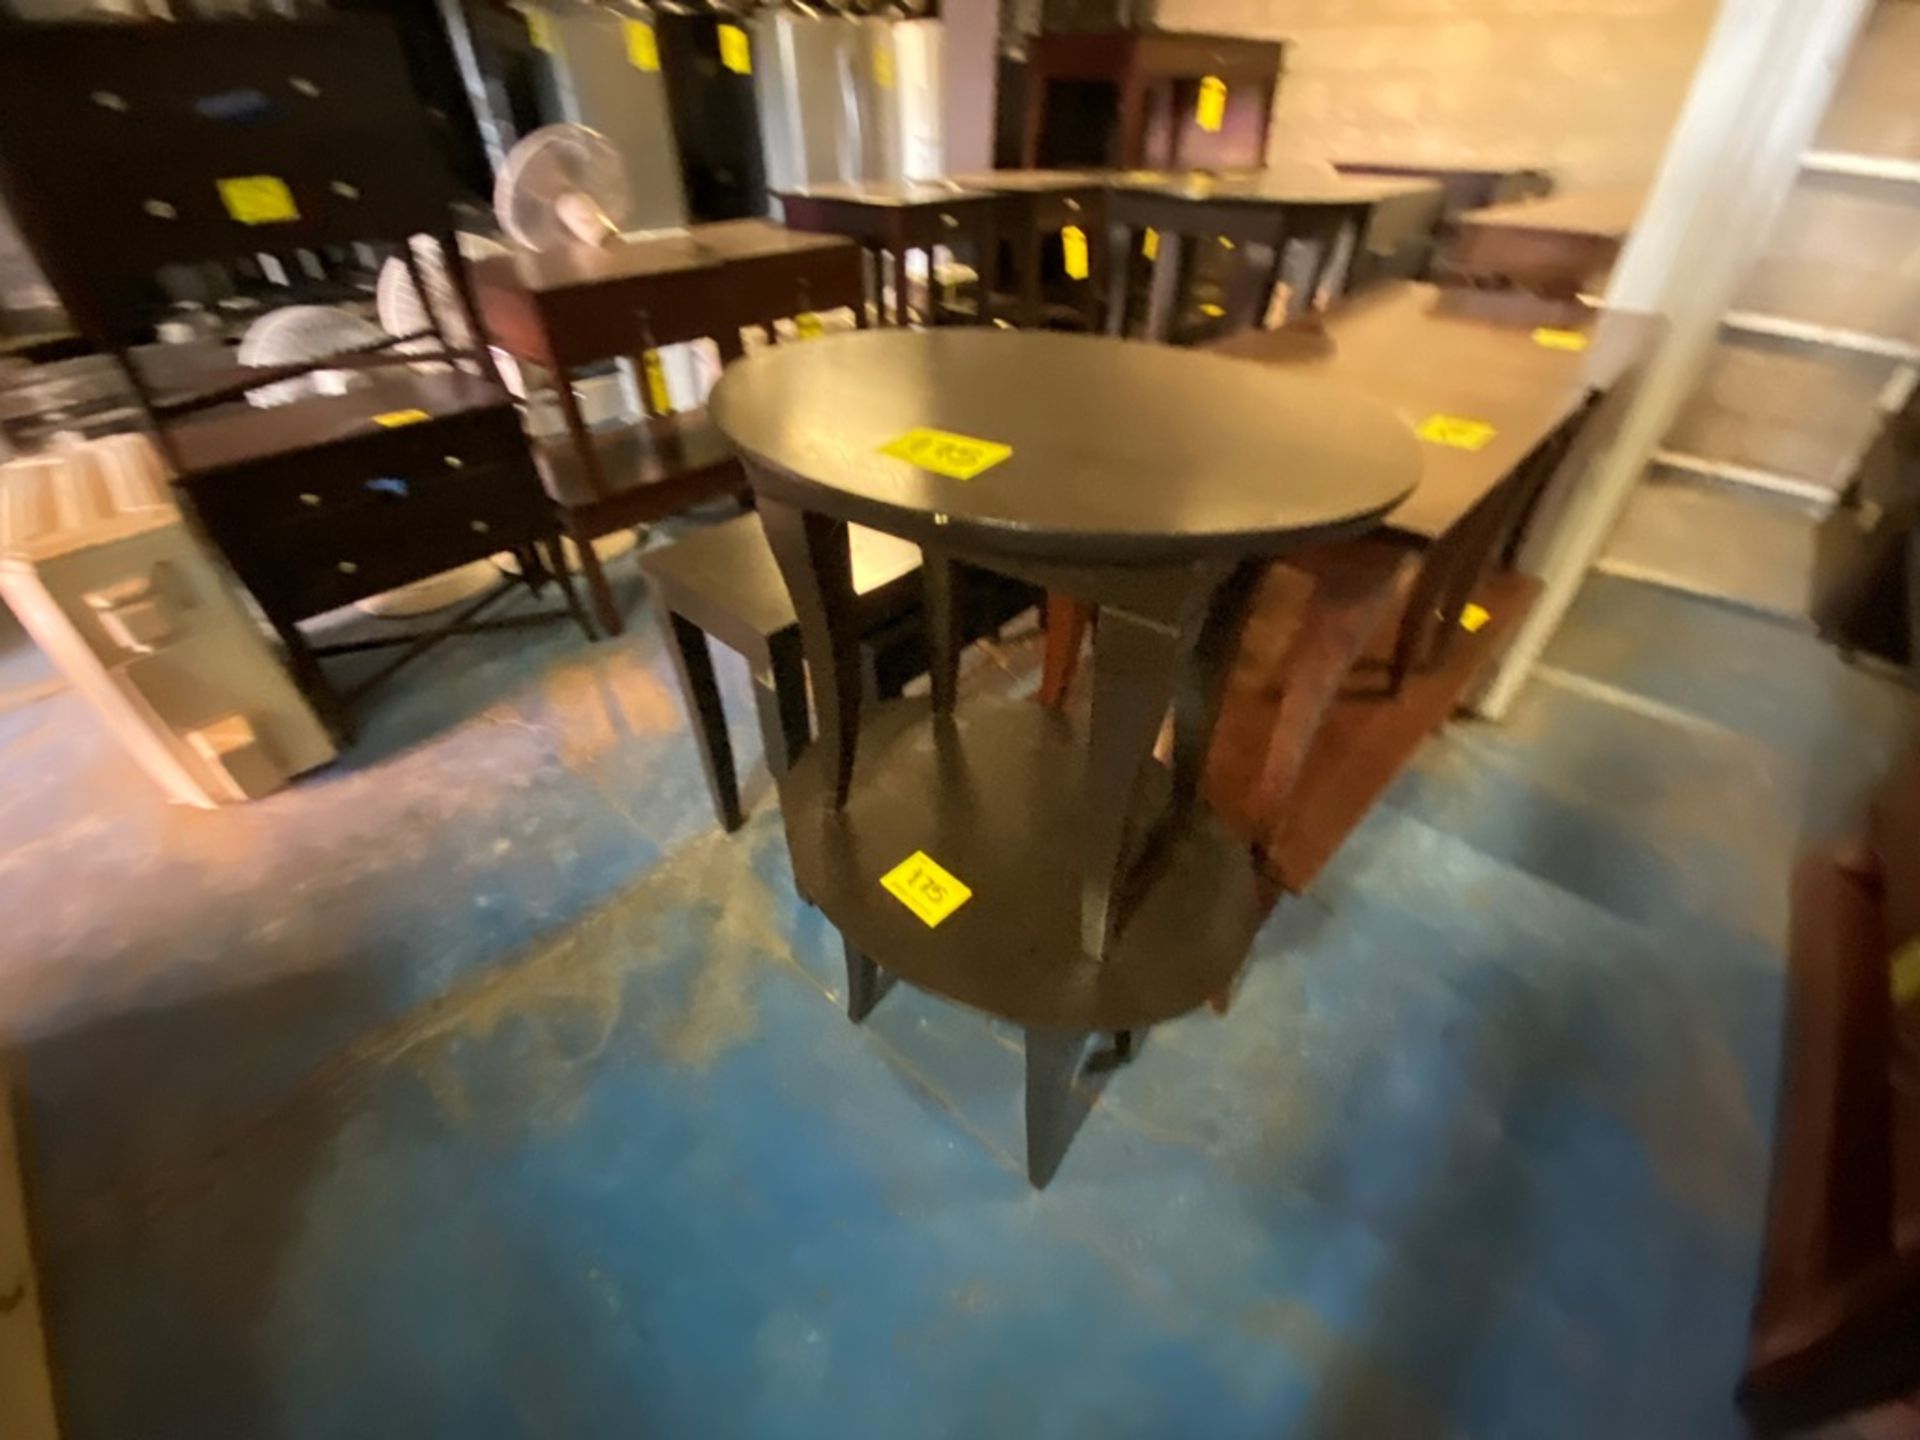 Lote Conformado por 2 mesas, Contiene; 1 Mesa Tipo Esquinero Ovalada de Madera Color Café 70x55x58 - Image 5 of 13